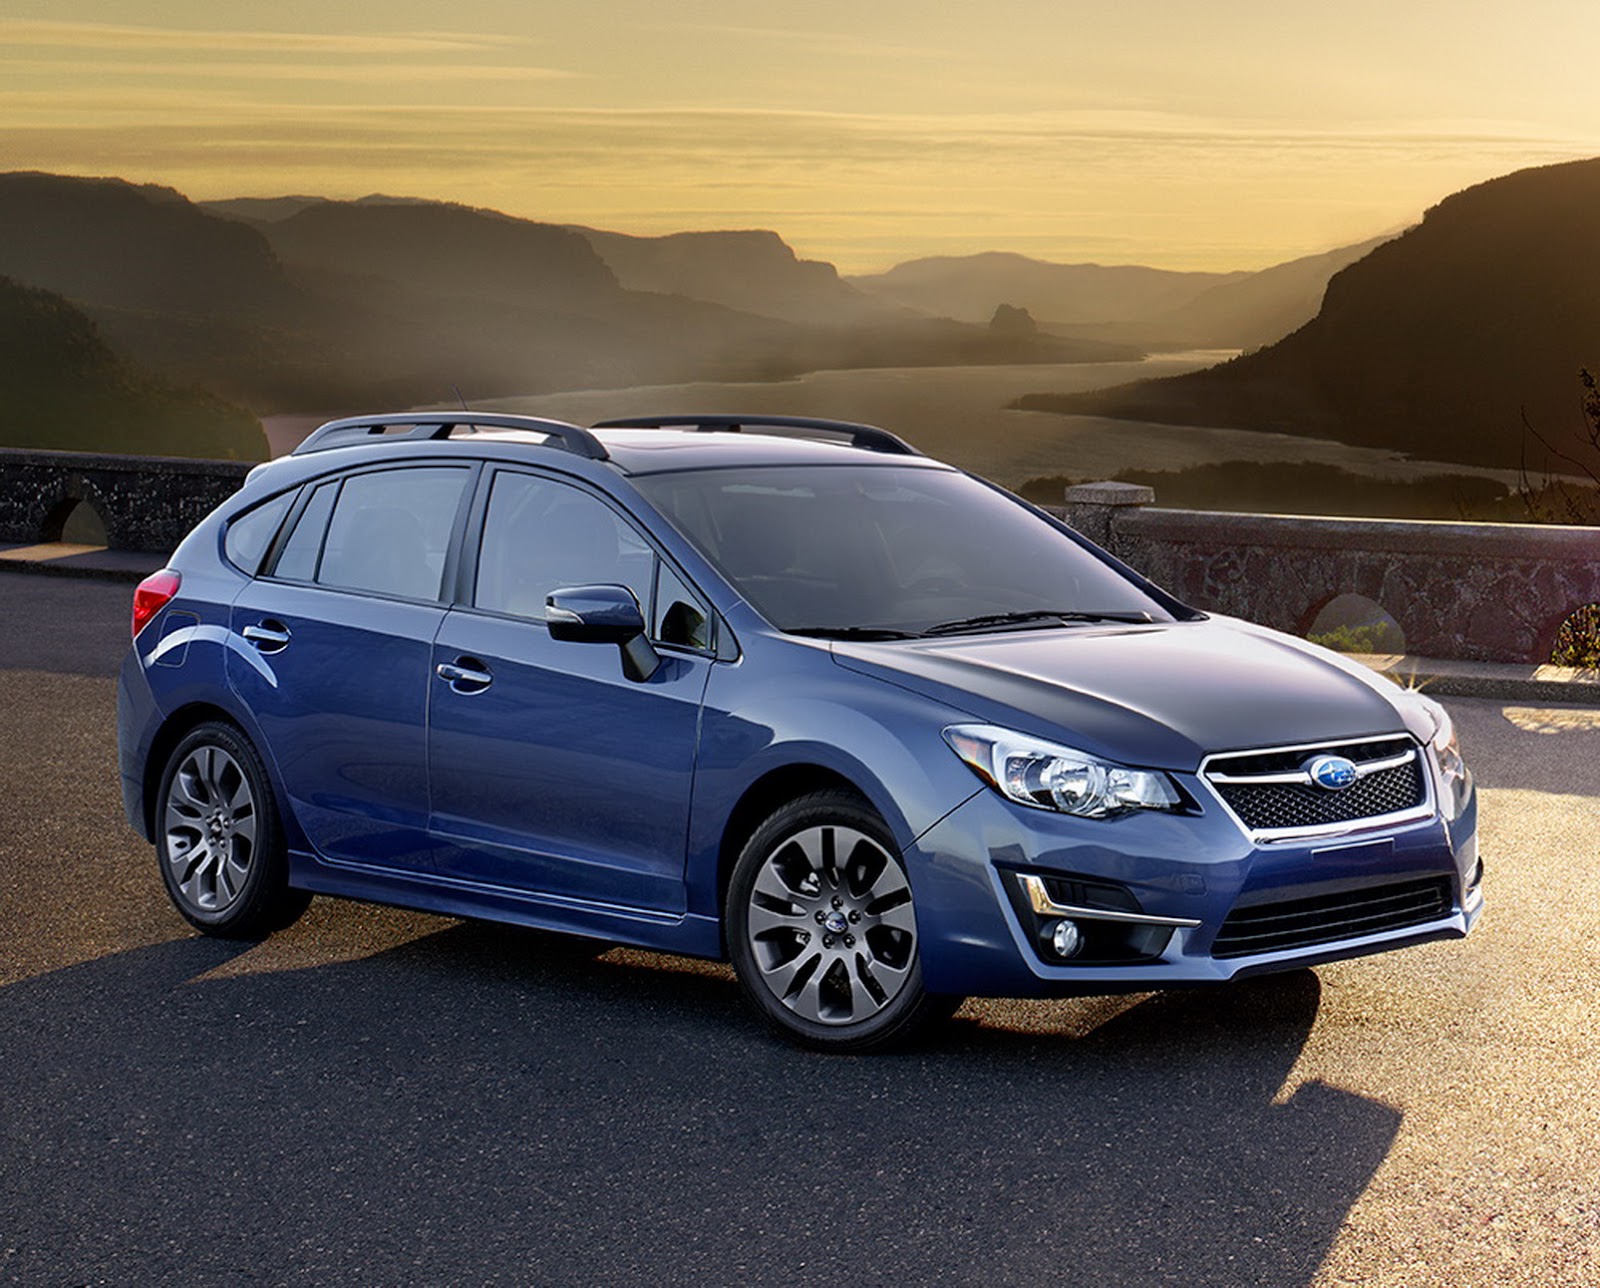 Subaru Gives 2015 Impreza a Modest Facelift | Carscoops1600 x 1288